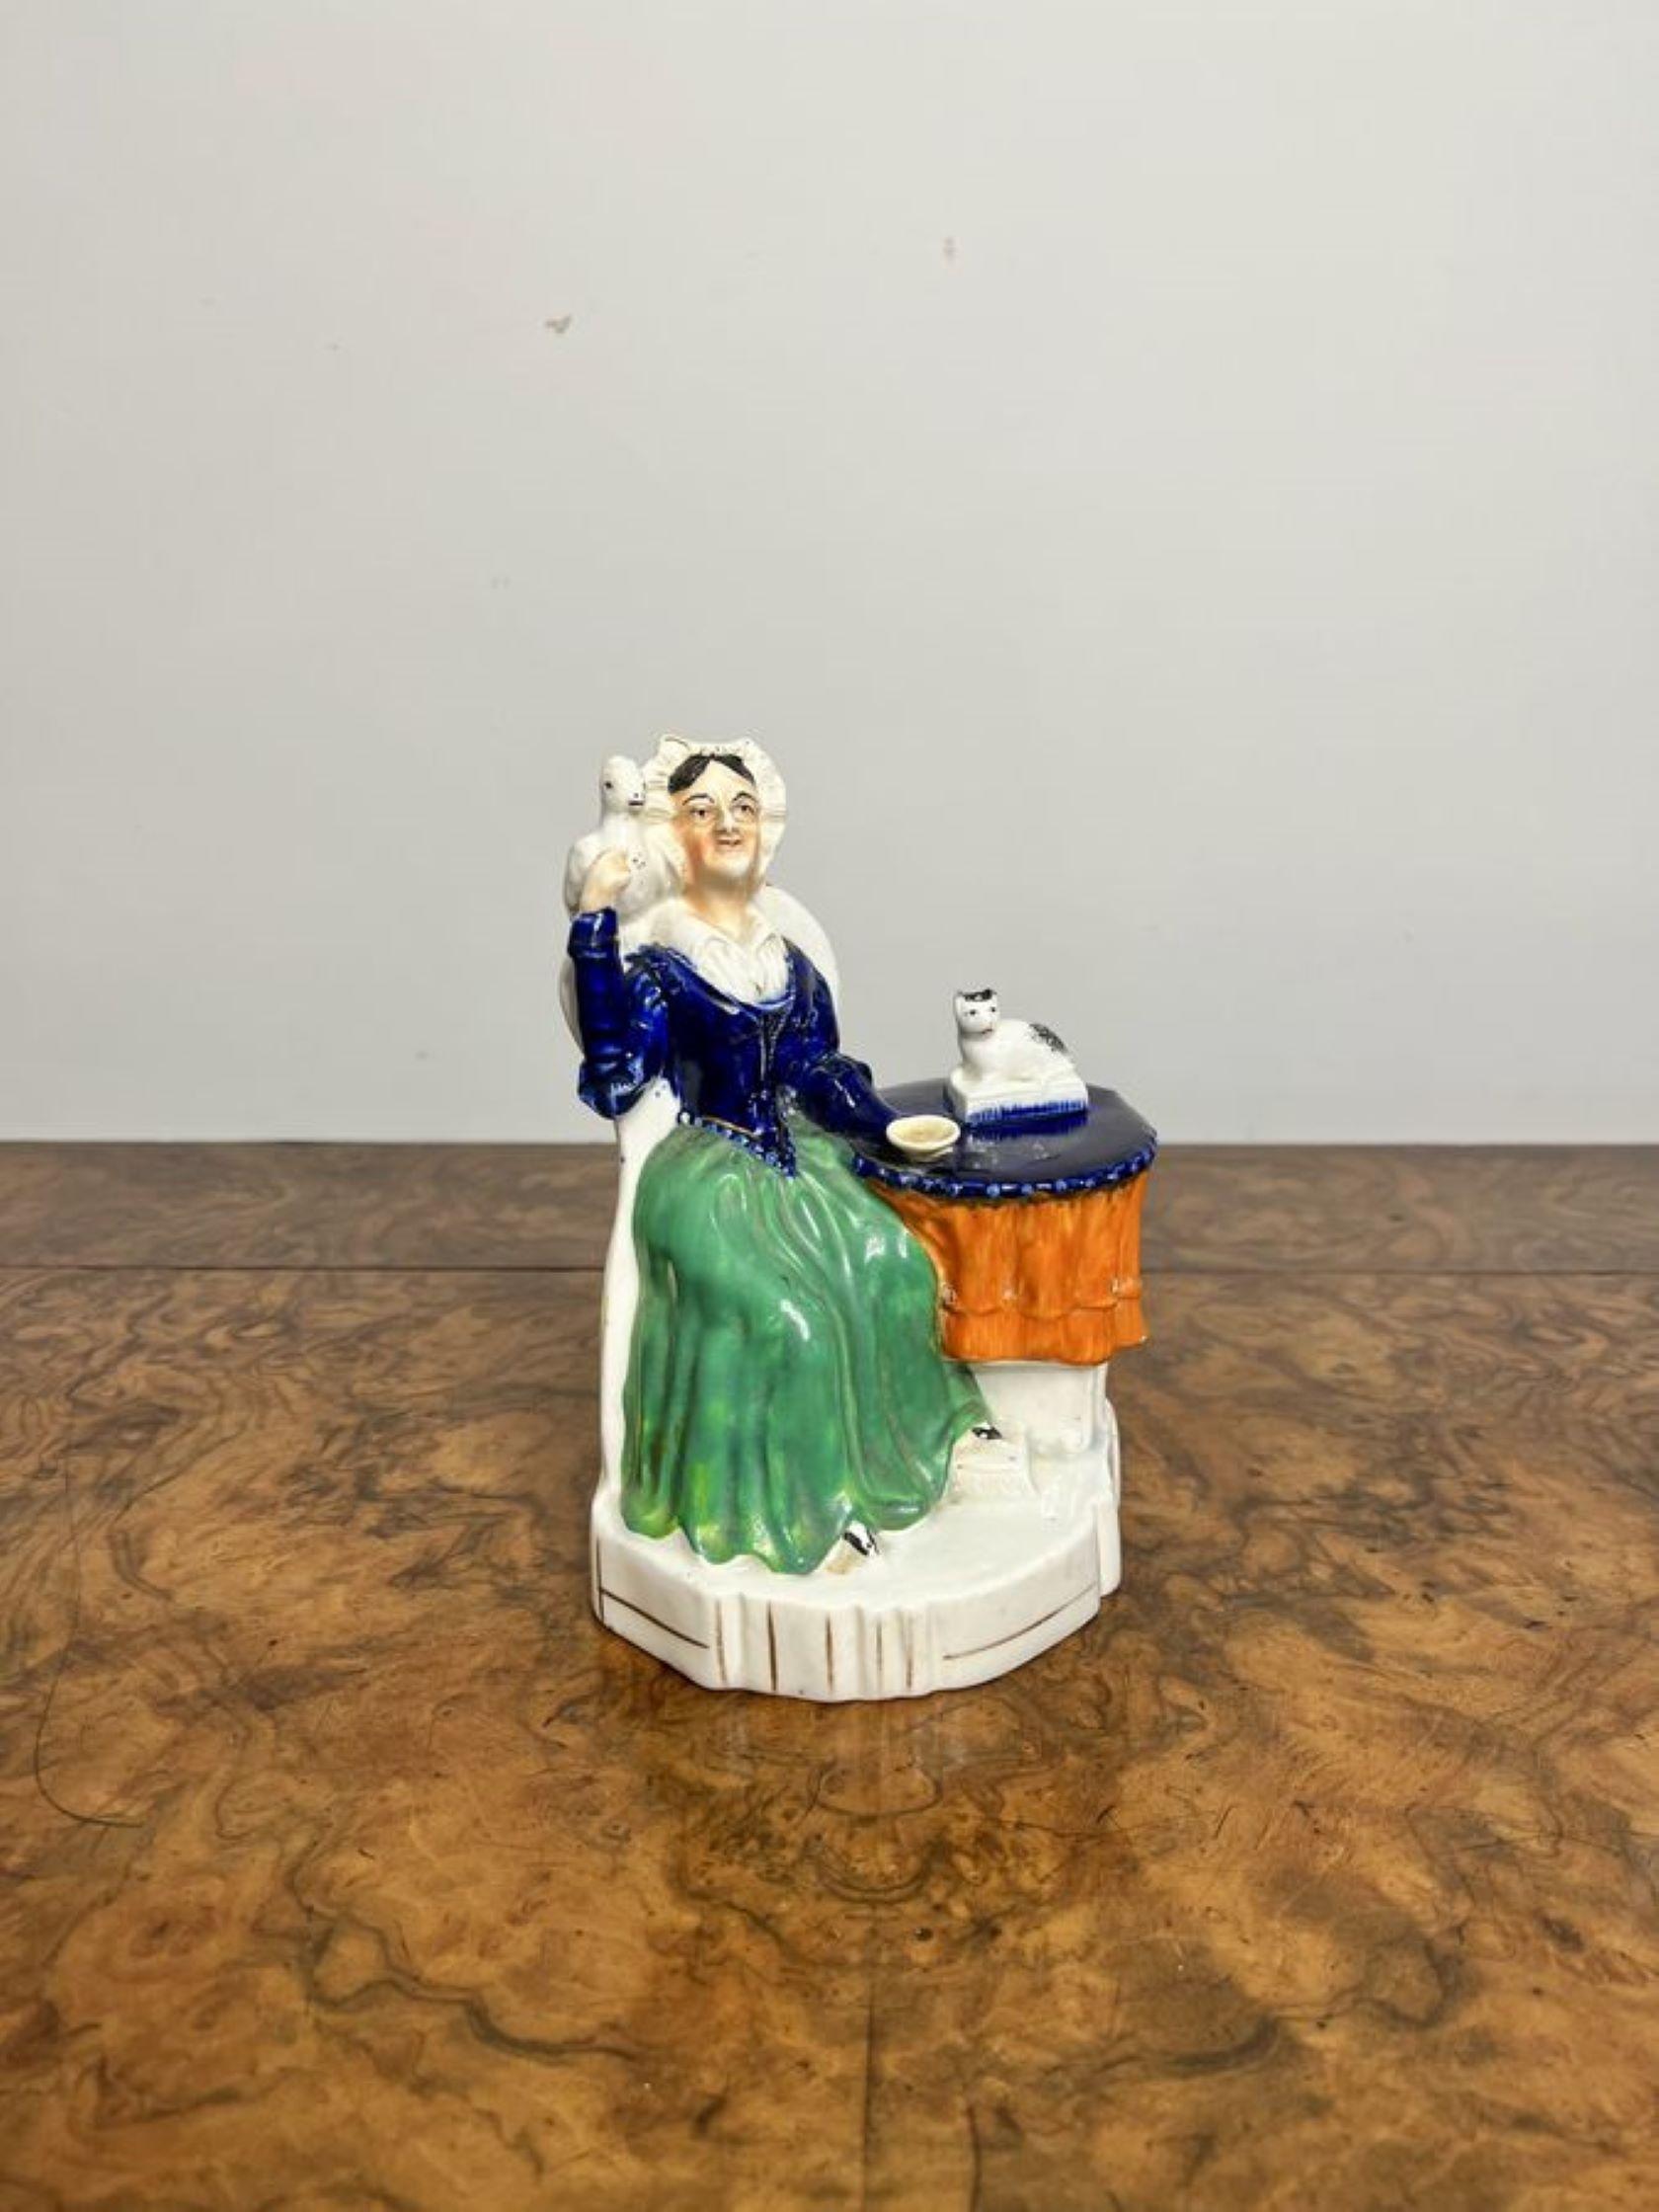 Antike viktorianische Staffordshire-Gruppe mit einer sitzenden Dame mit einem Vogel auf der Schulter und einer Katze auf dem Tisch neben ihr, handbemalt in wunderschönen grünen, blauen, orangen und weißen Farben, auf einem geformten Sockel. 

D. 1880